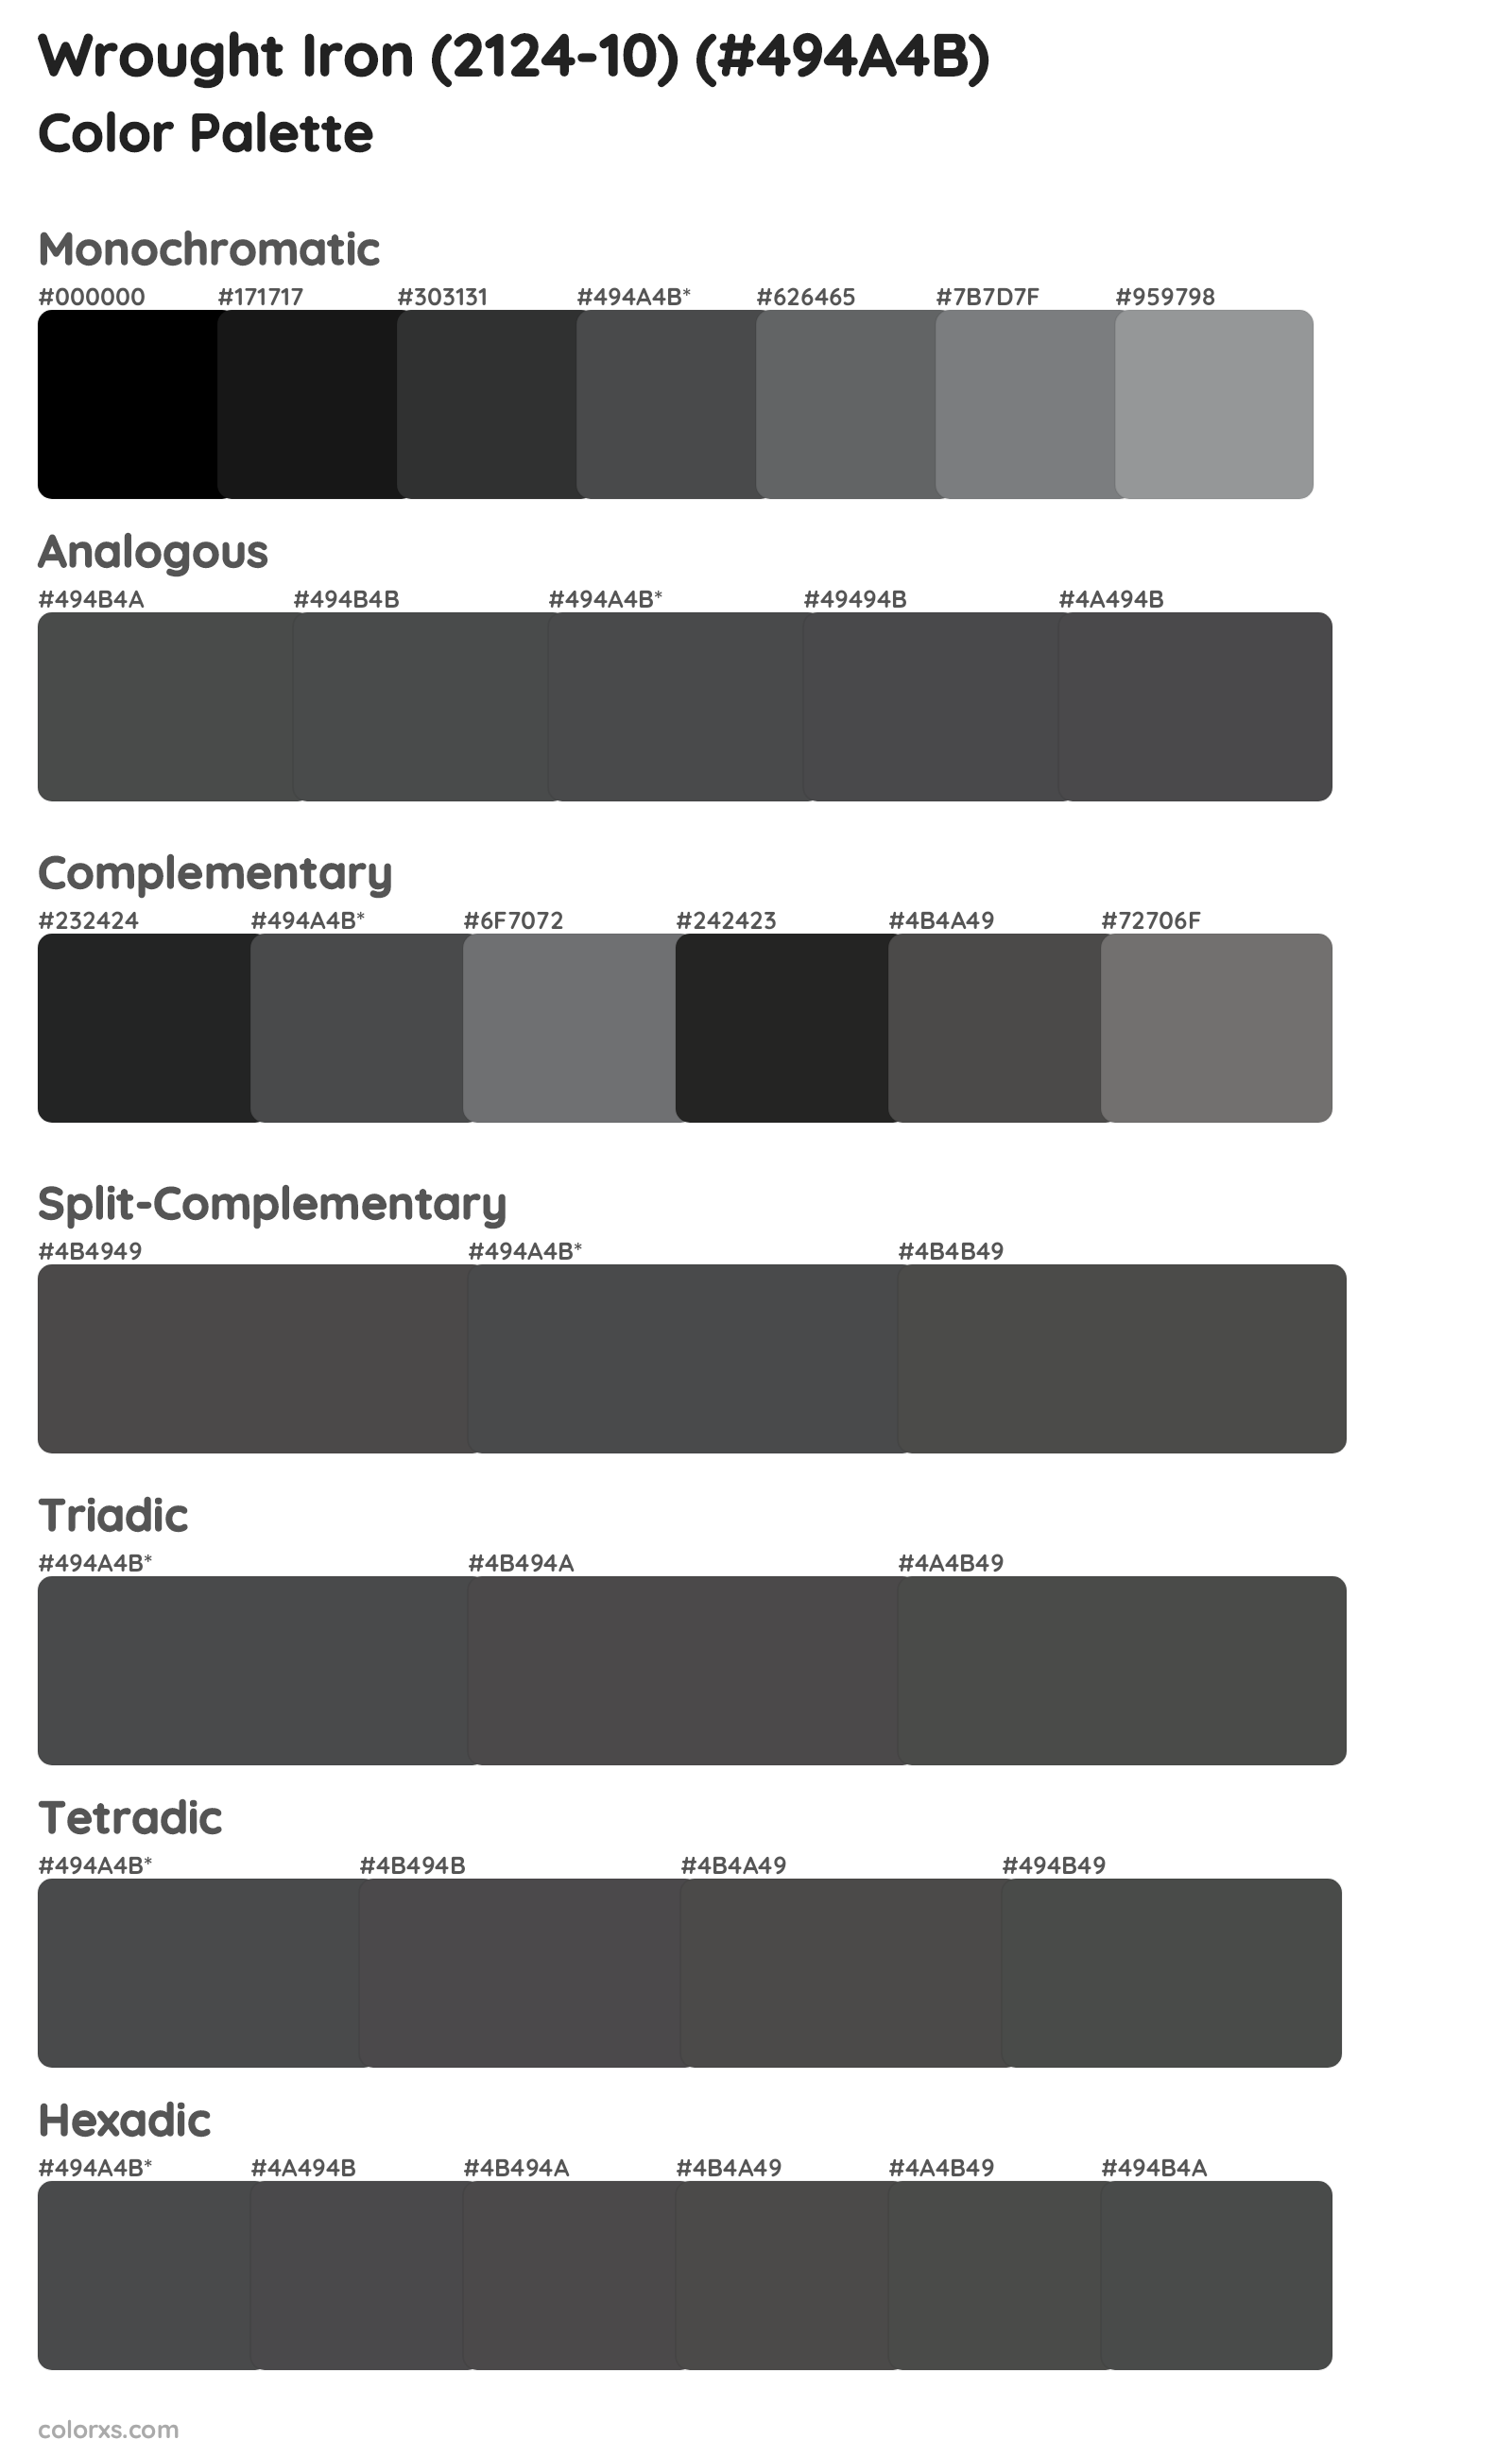 Wrought Iron (2124-10) Color Scheme Palettes